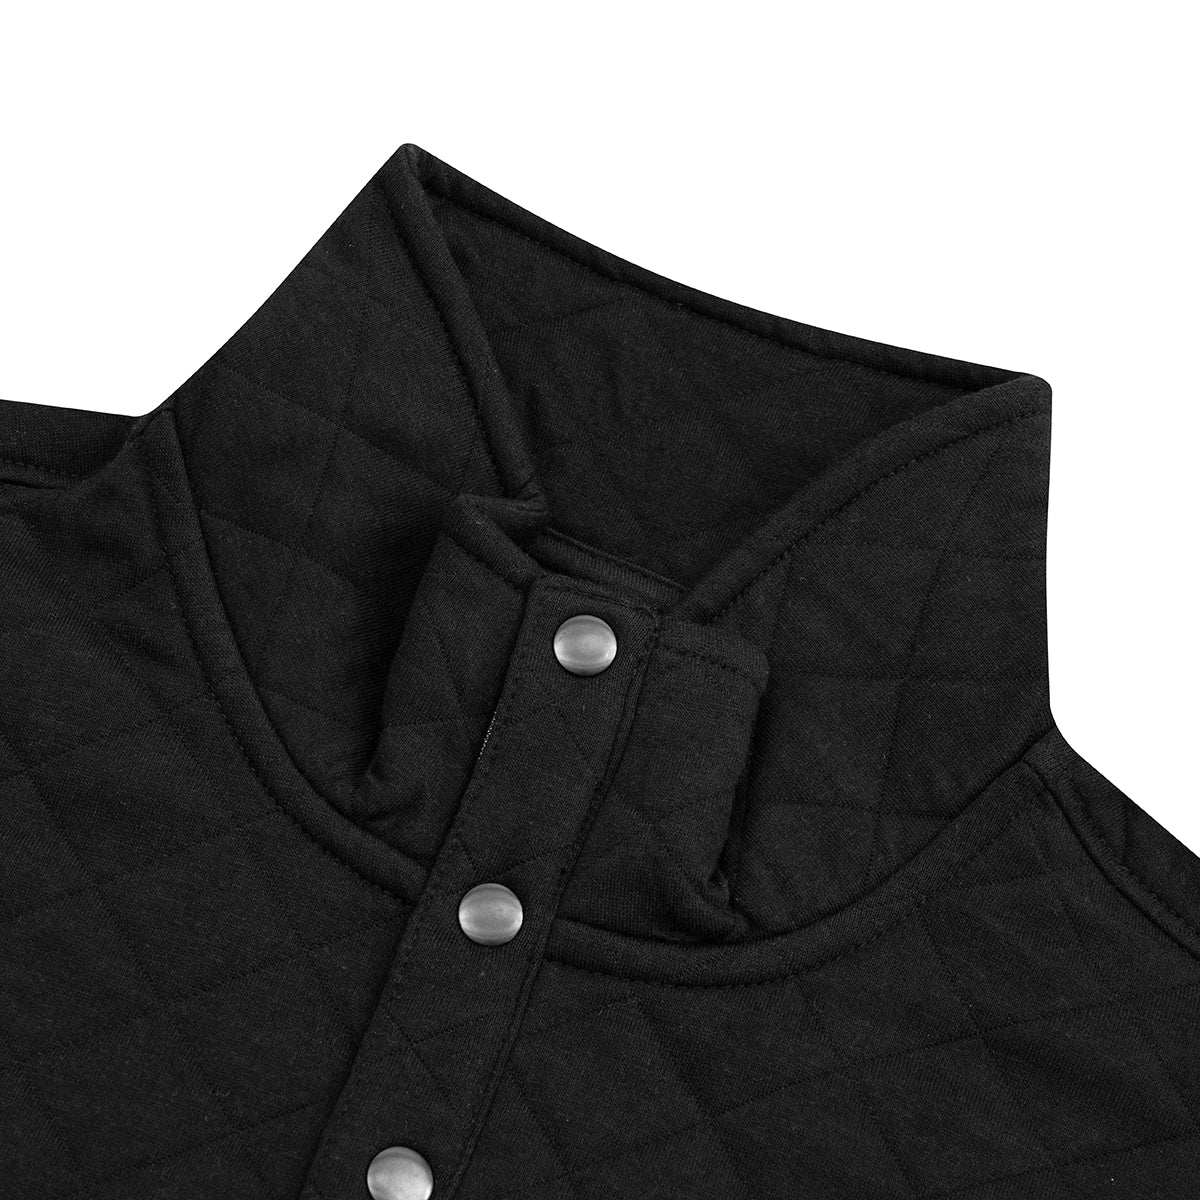 Sweater con botones en color negro de Perry Ellis SW00096031